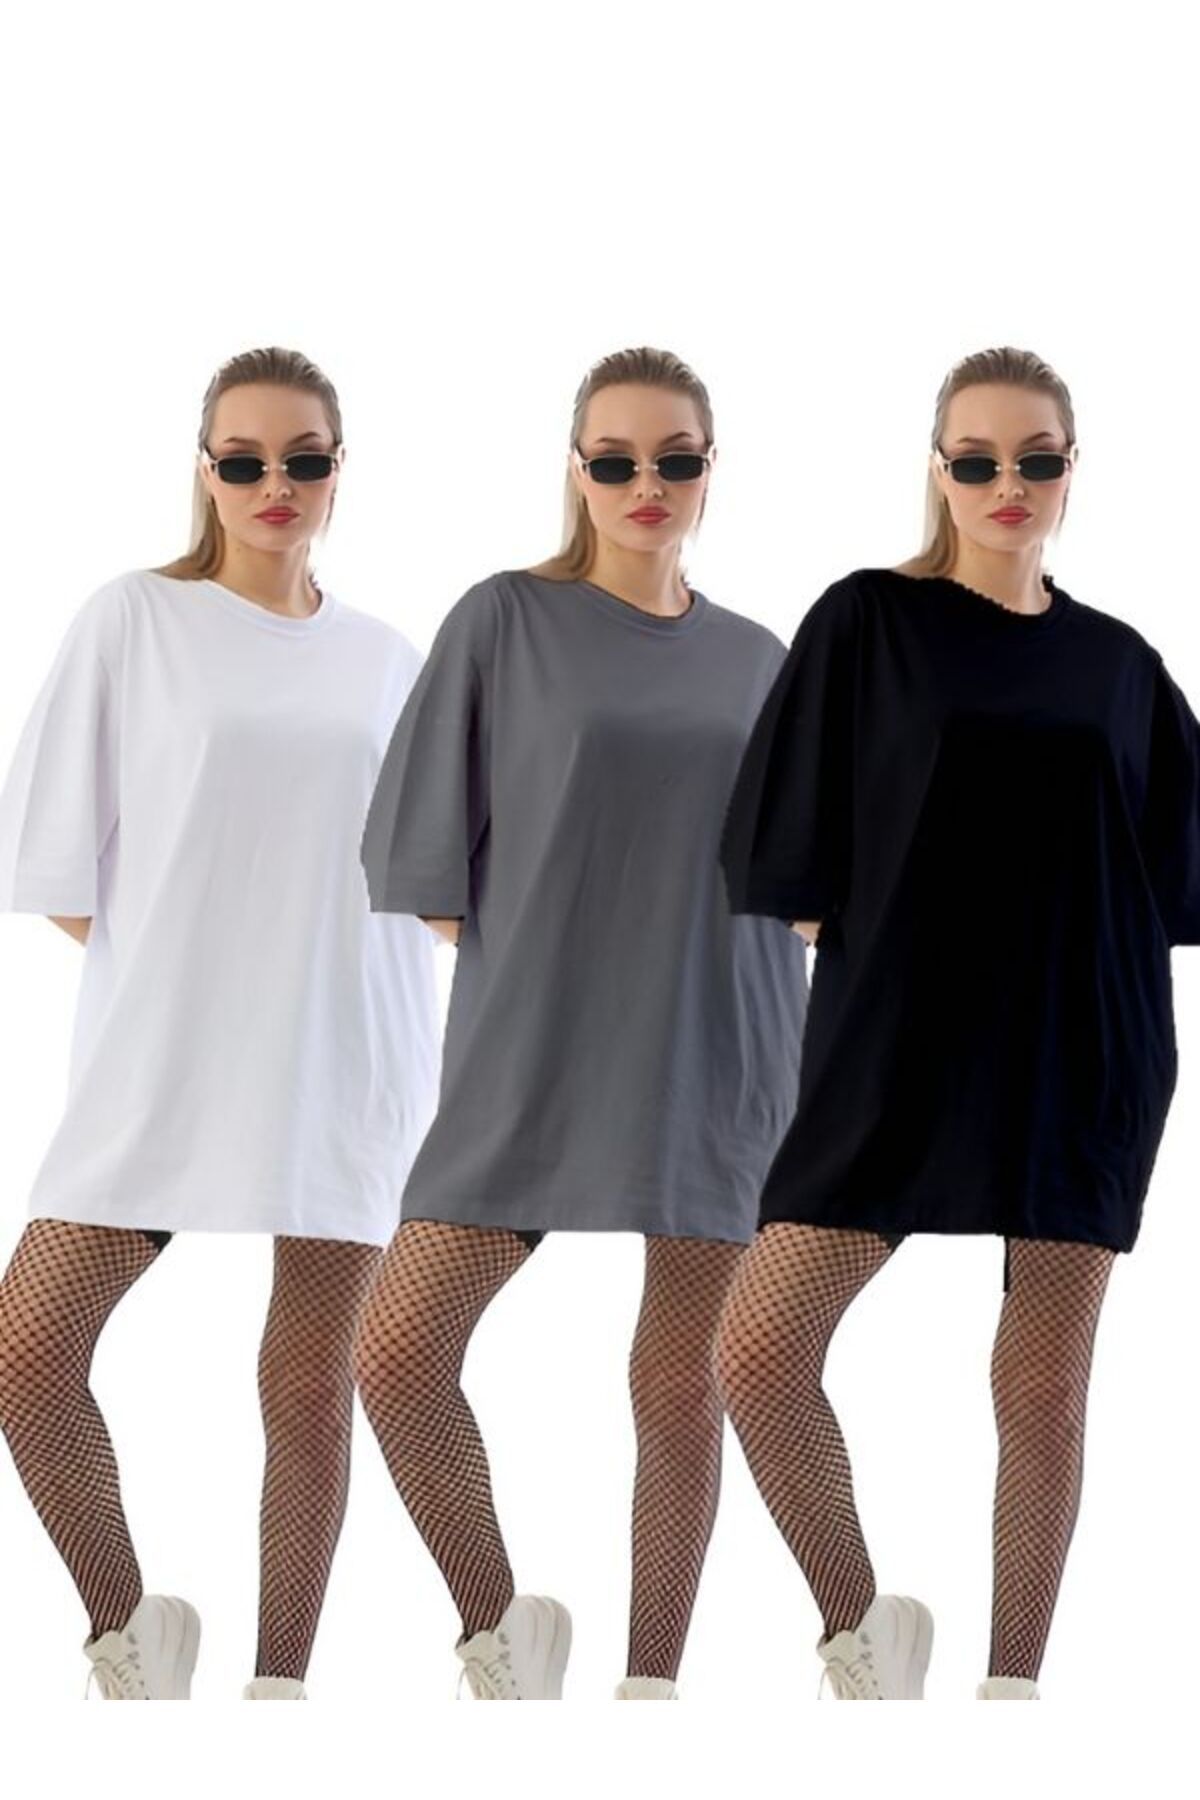 HABBE UNİSEX 3'lü Kadın Siyah-beyaz-gri Tişört Unisex T-shirt Erkek Kadın Tişört Tişört Yazlık